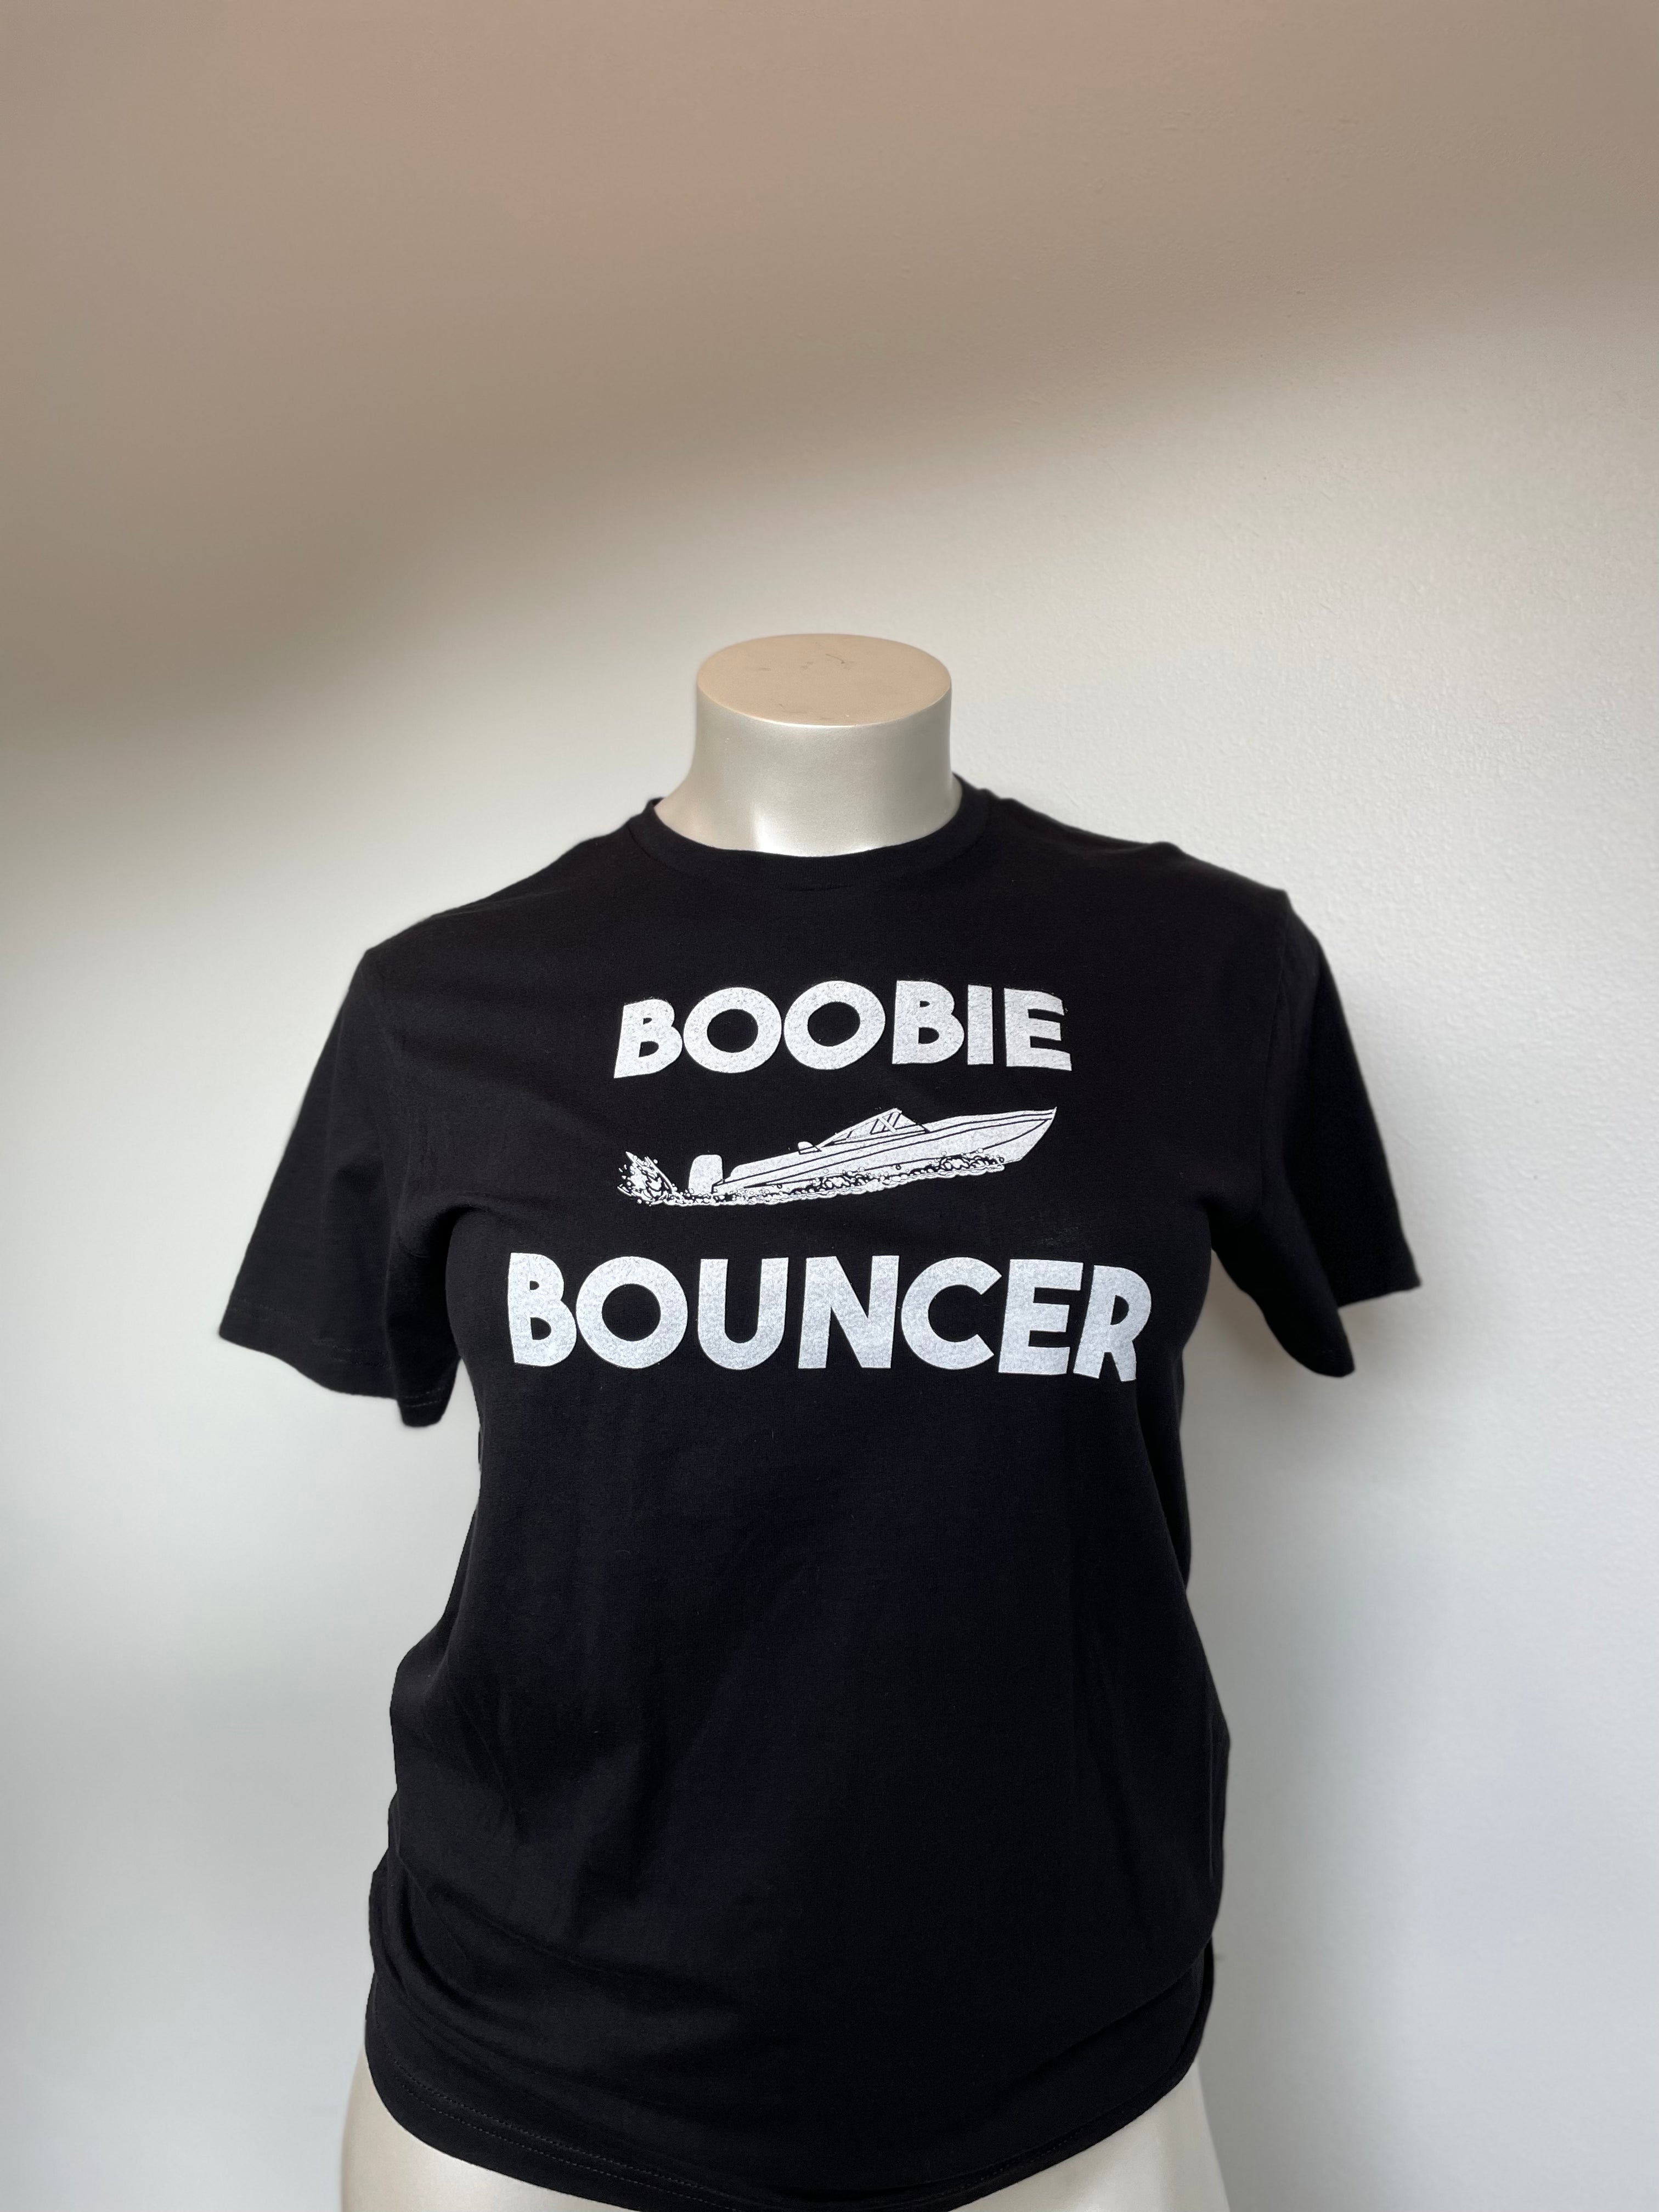 Boobie Bouncer // T-shirt